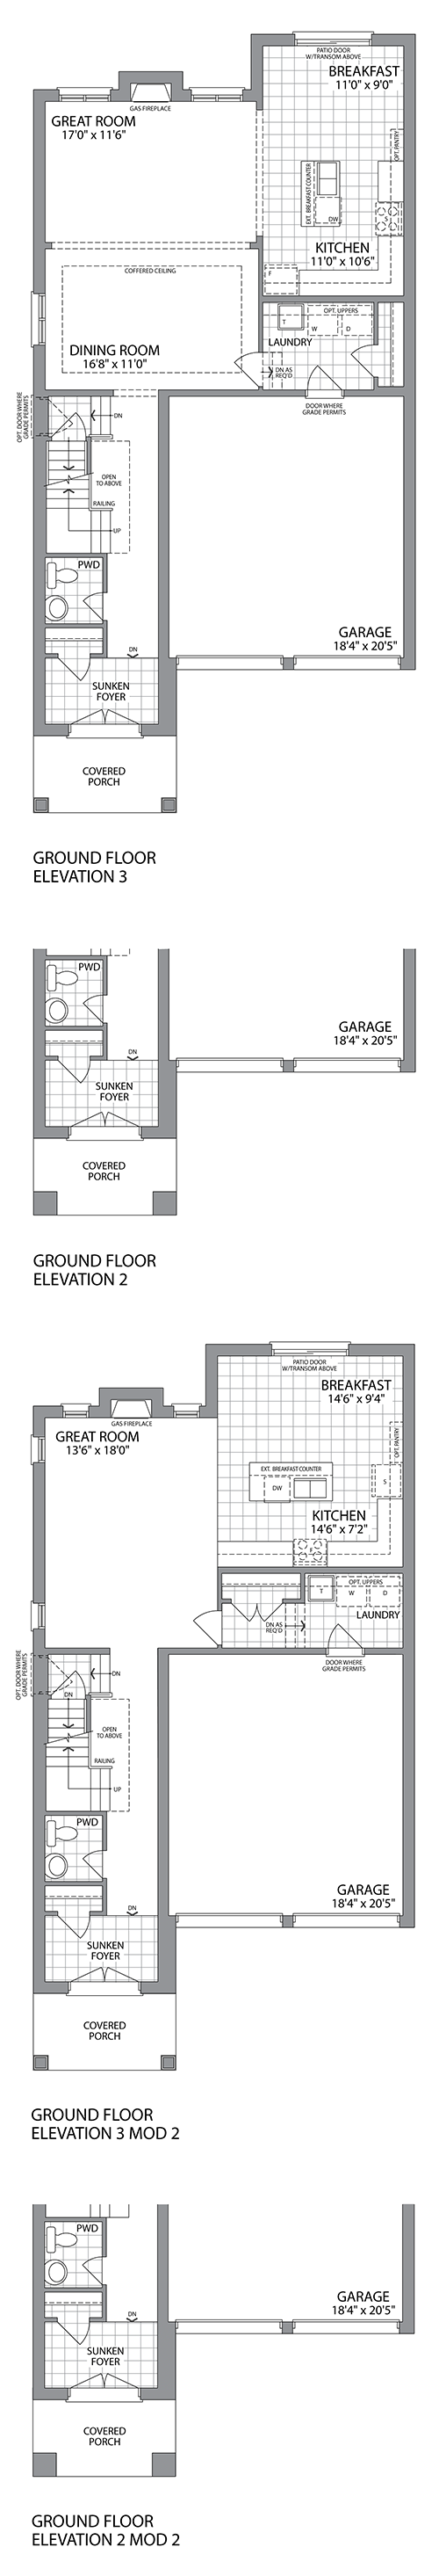 The GRESHAM Ground Floor